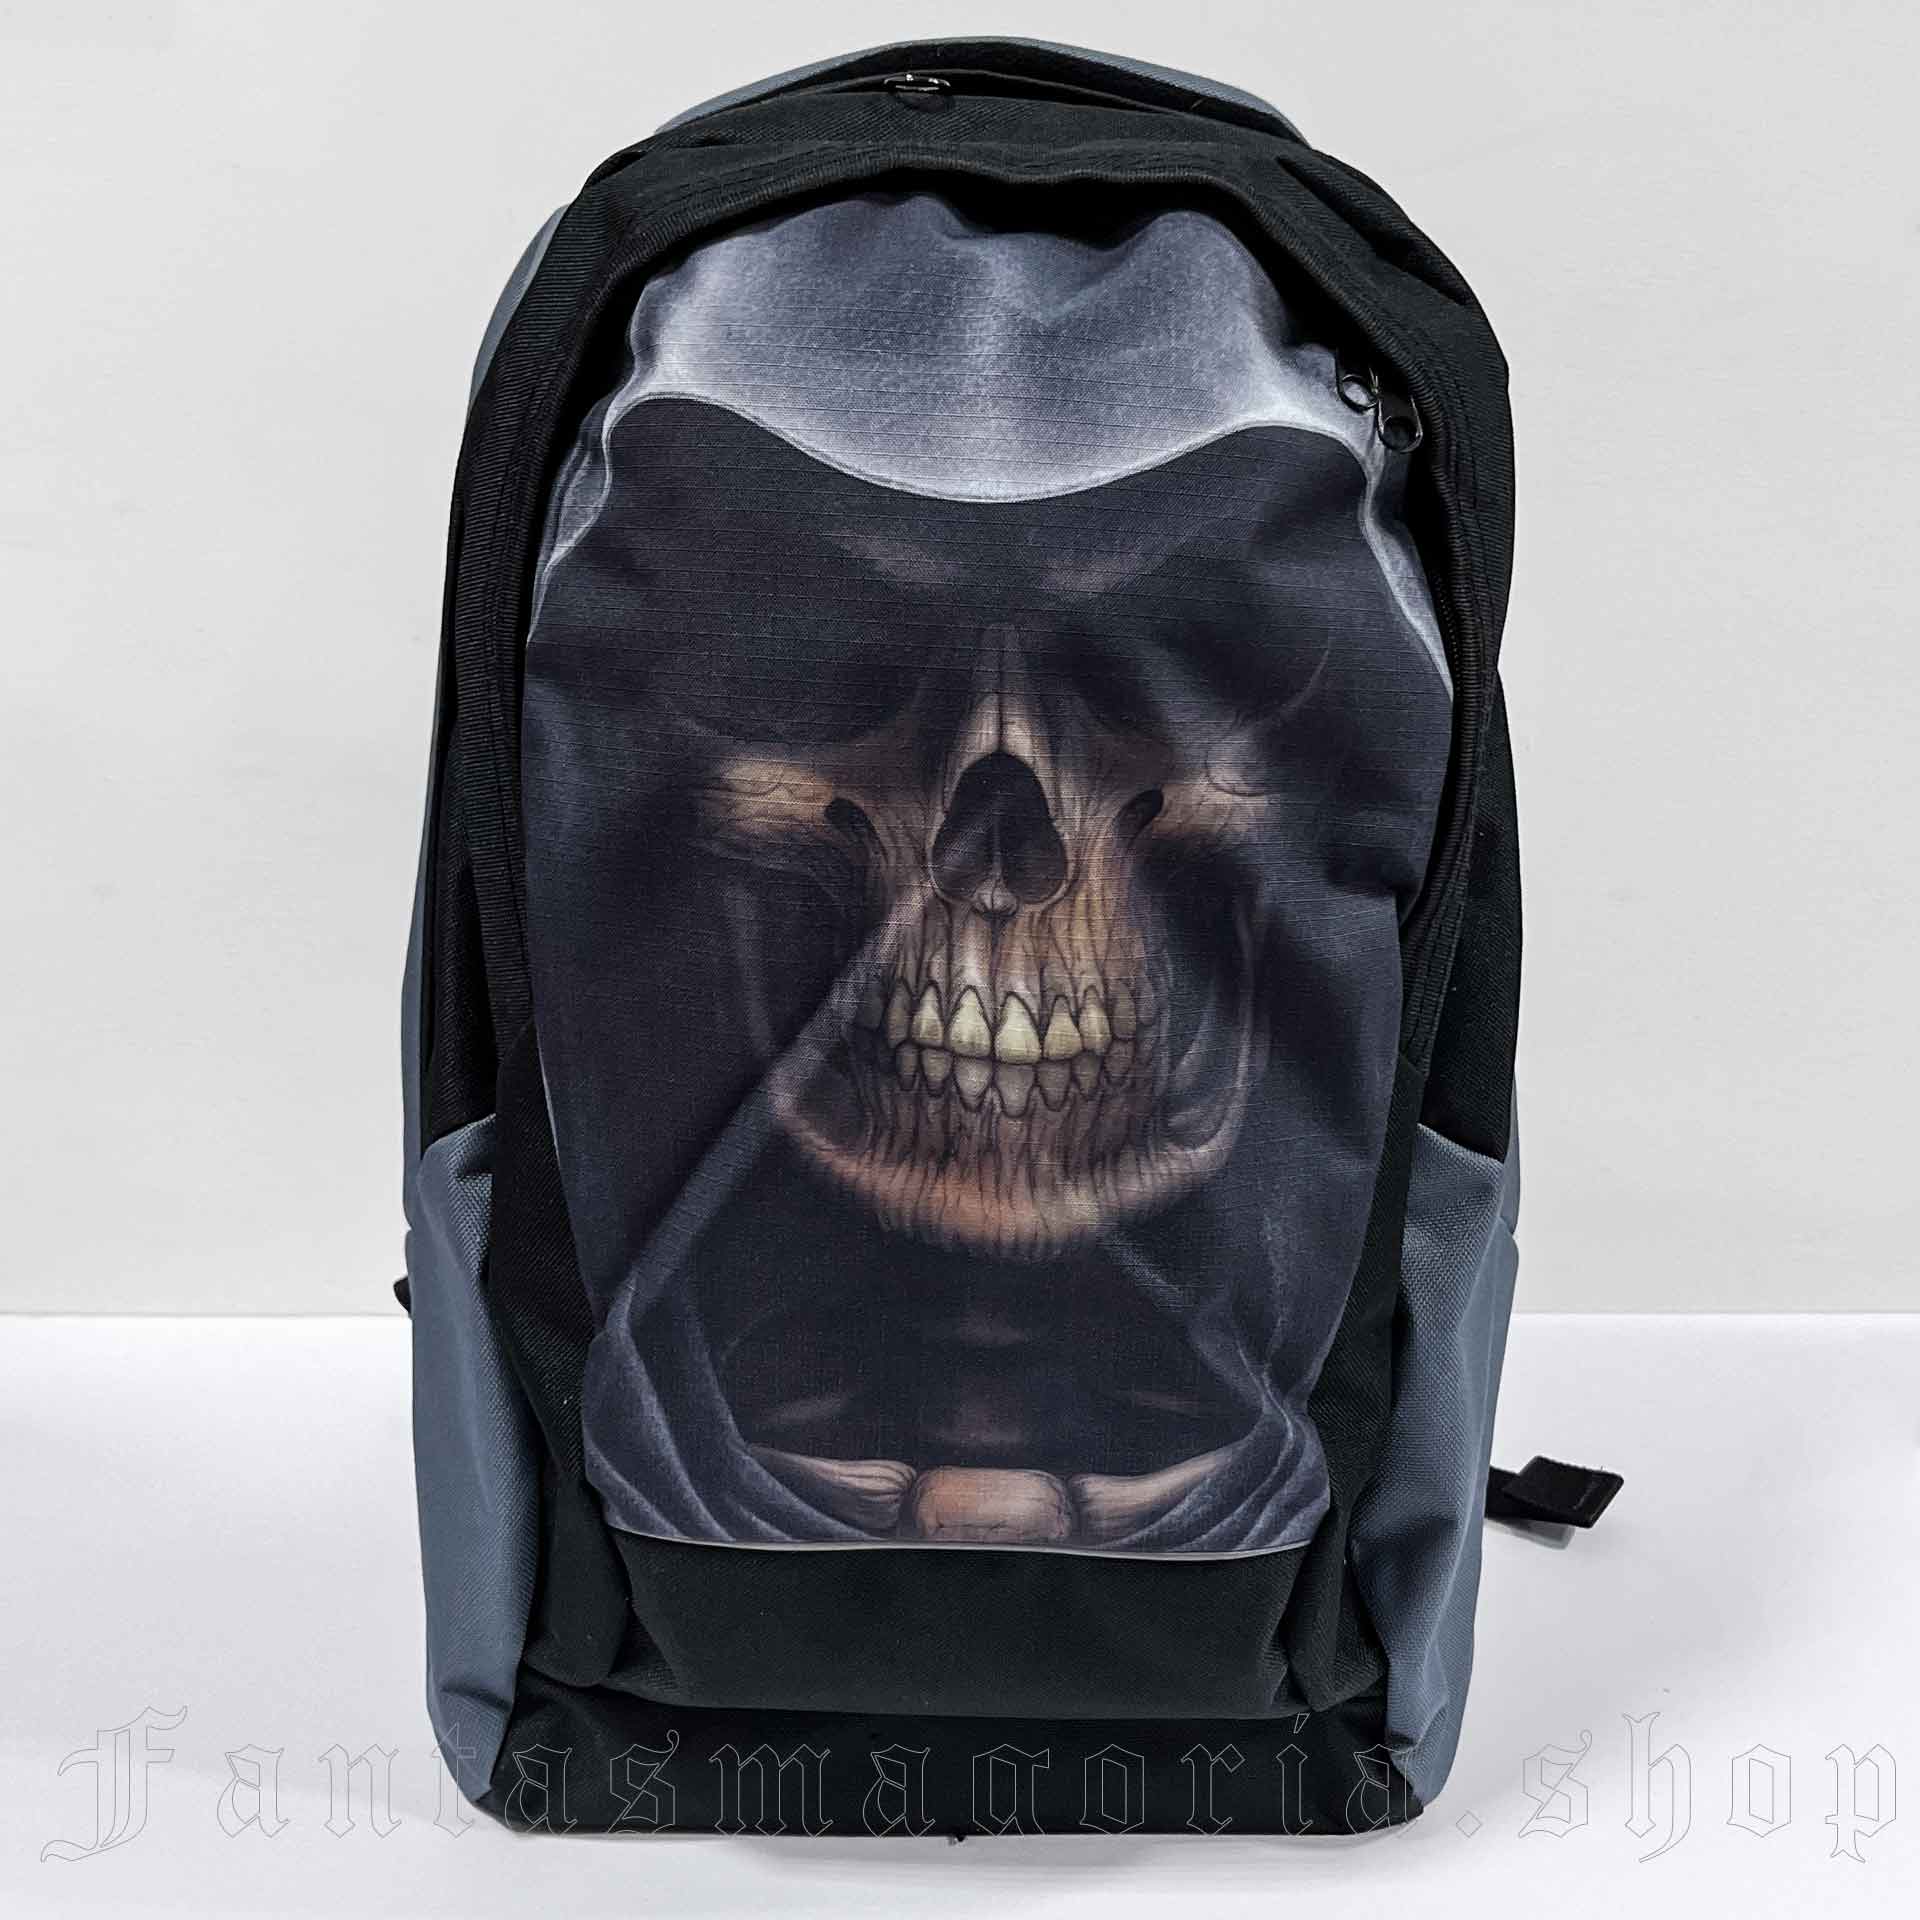 Black street style skull print backpack.. NoName BP005.